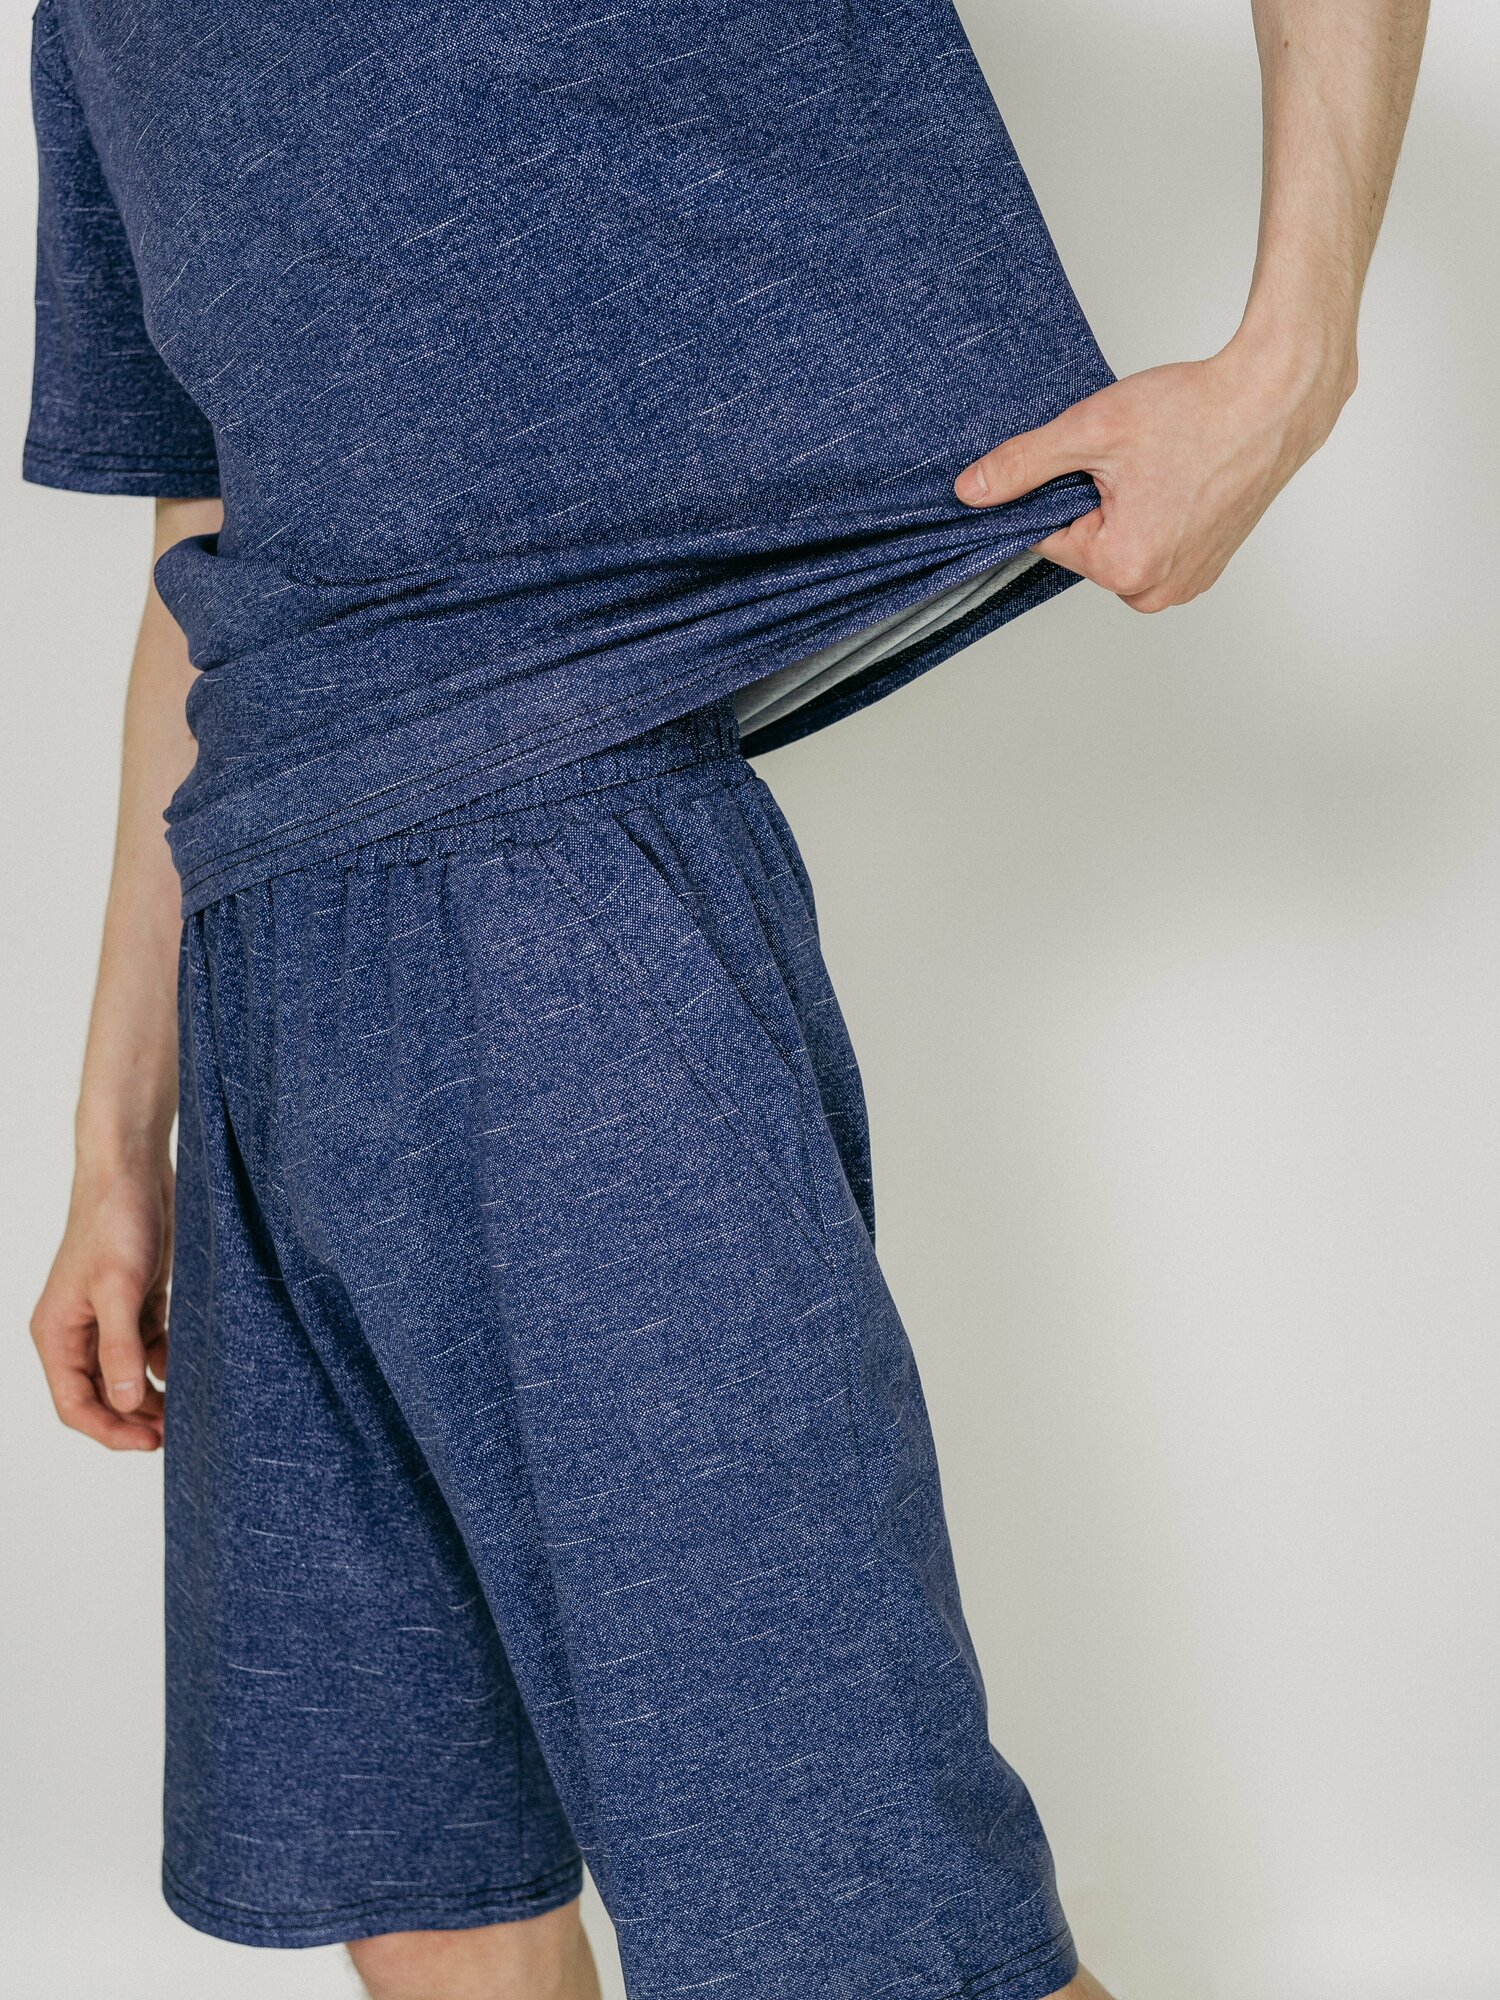 Мужская пижама, мужской пижамный комплект ARISTARHOV, Футболка + Шорты, Синий джинс, размер 54 - фотография № 4